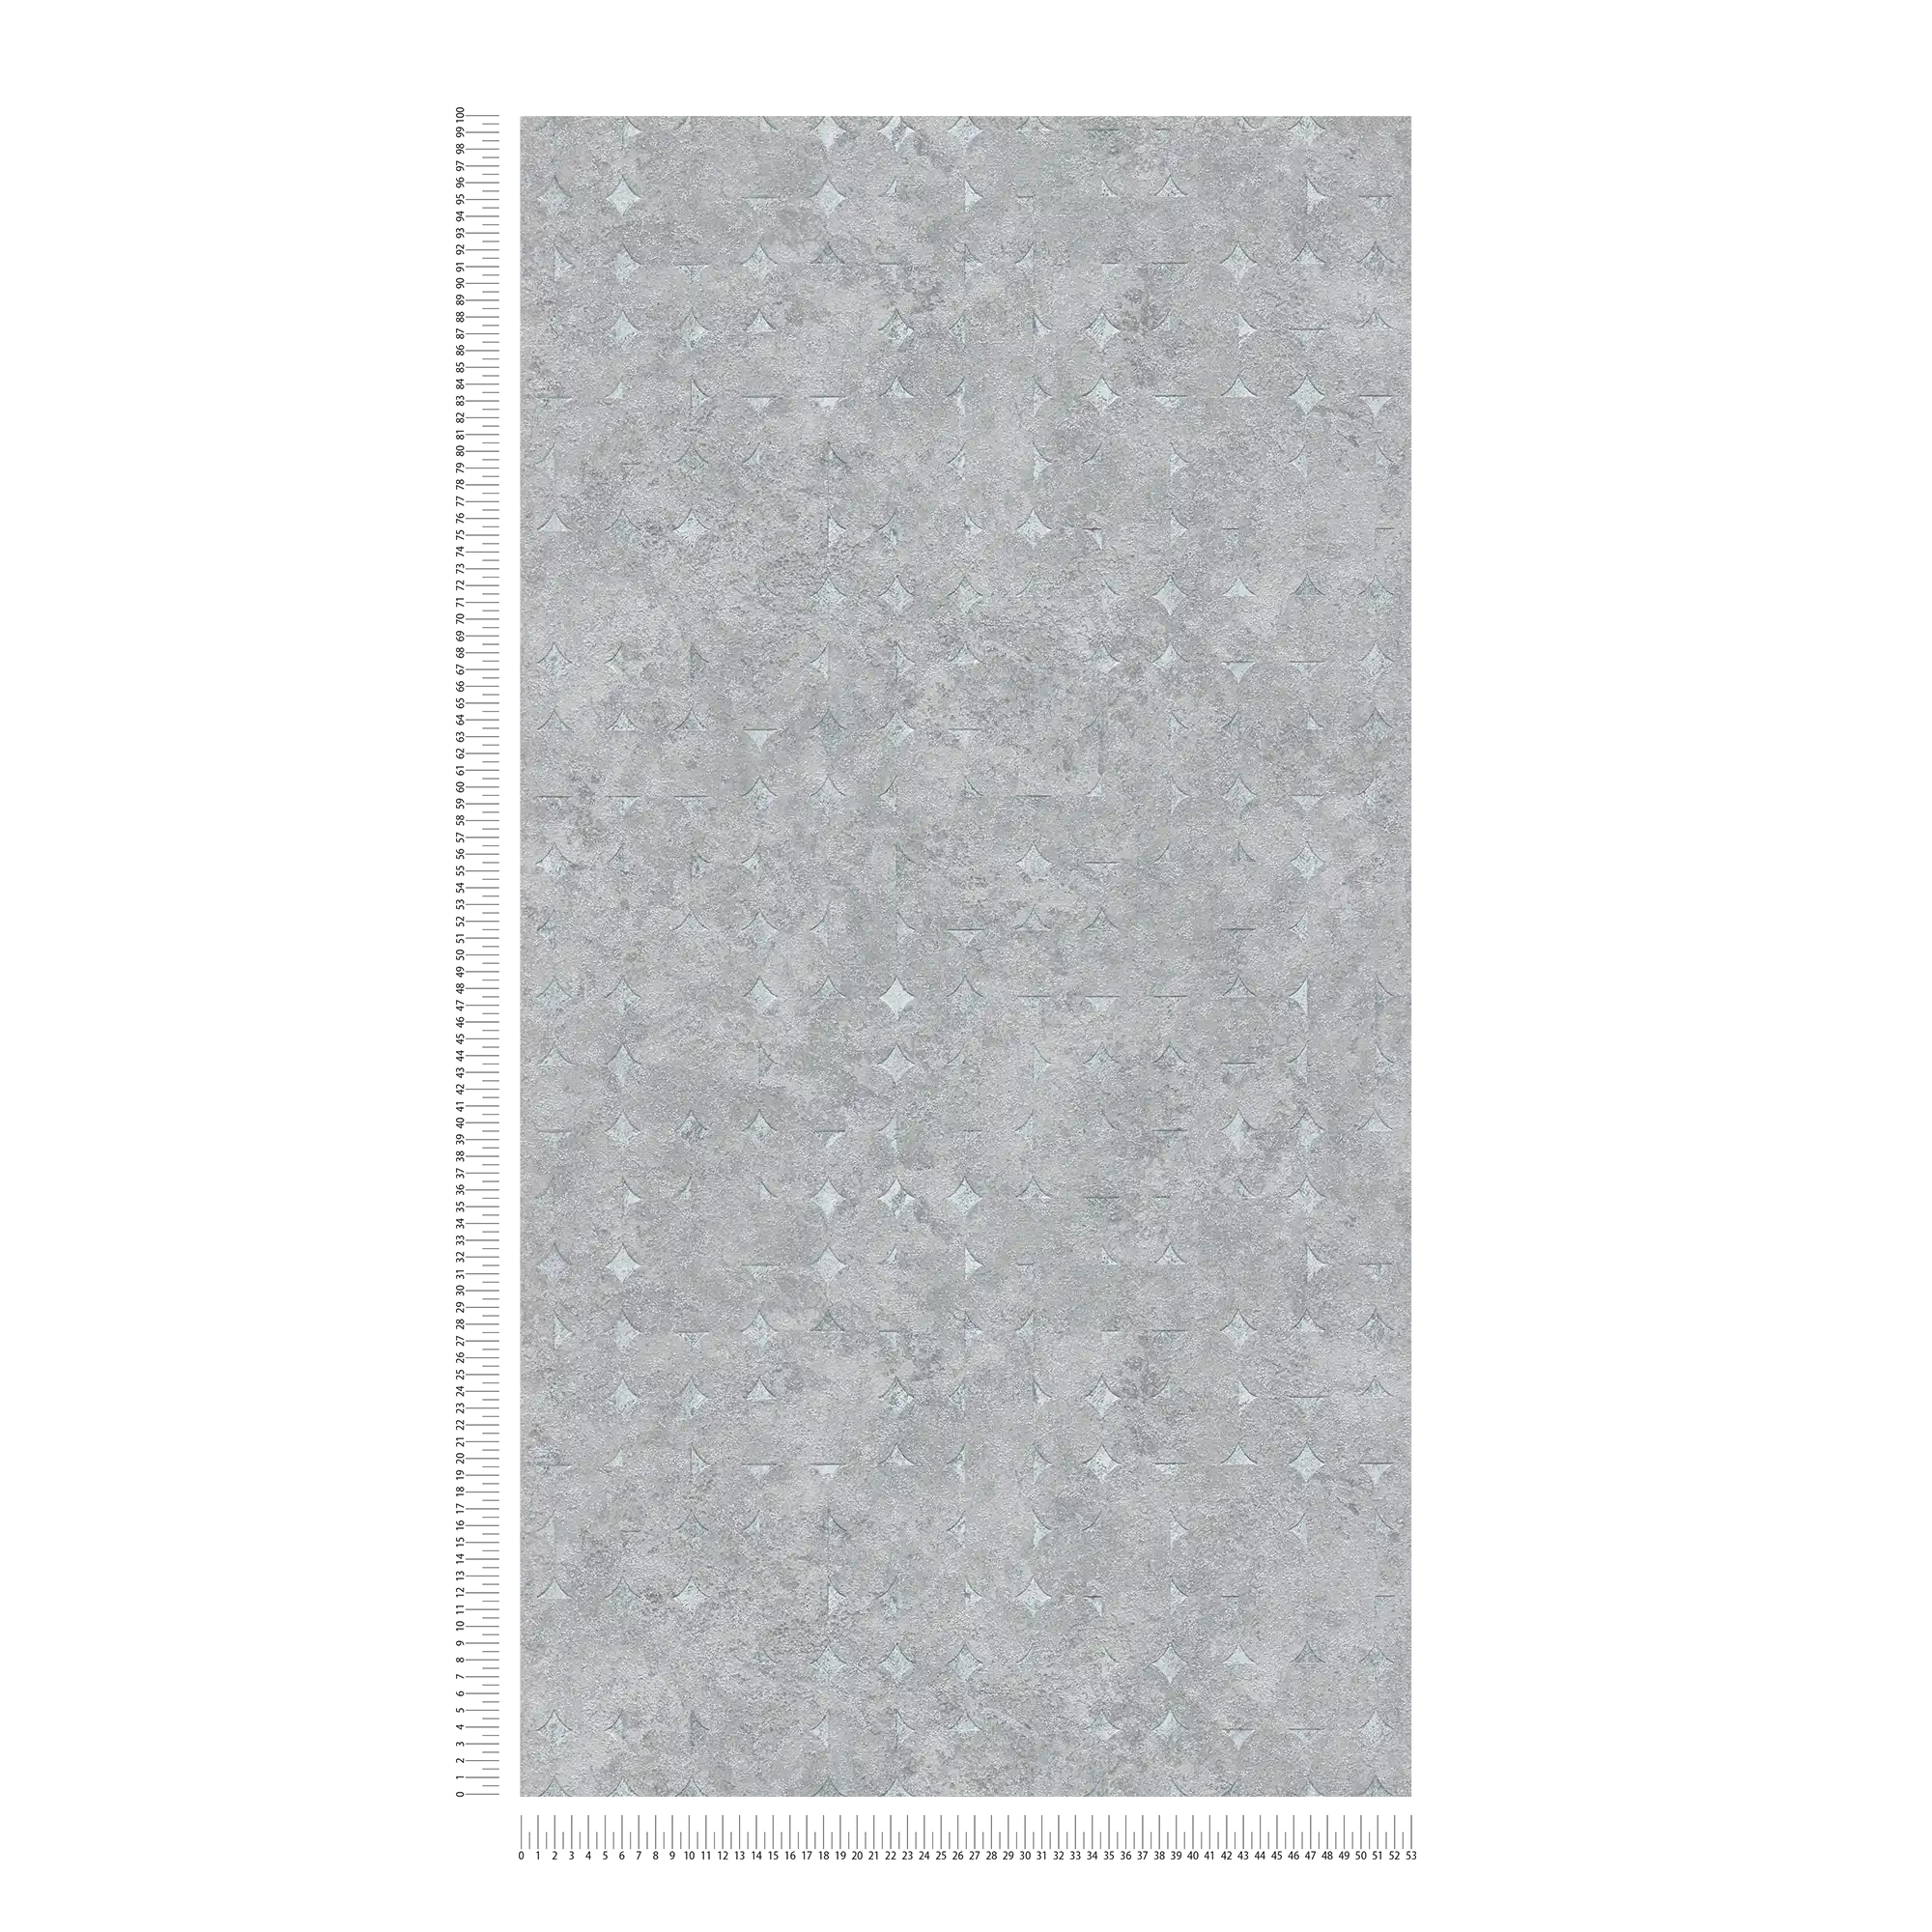             papier peint en papier avec formes géométriques et accents brillants - gris, argenté
        